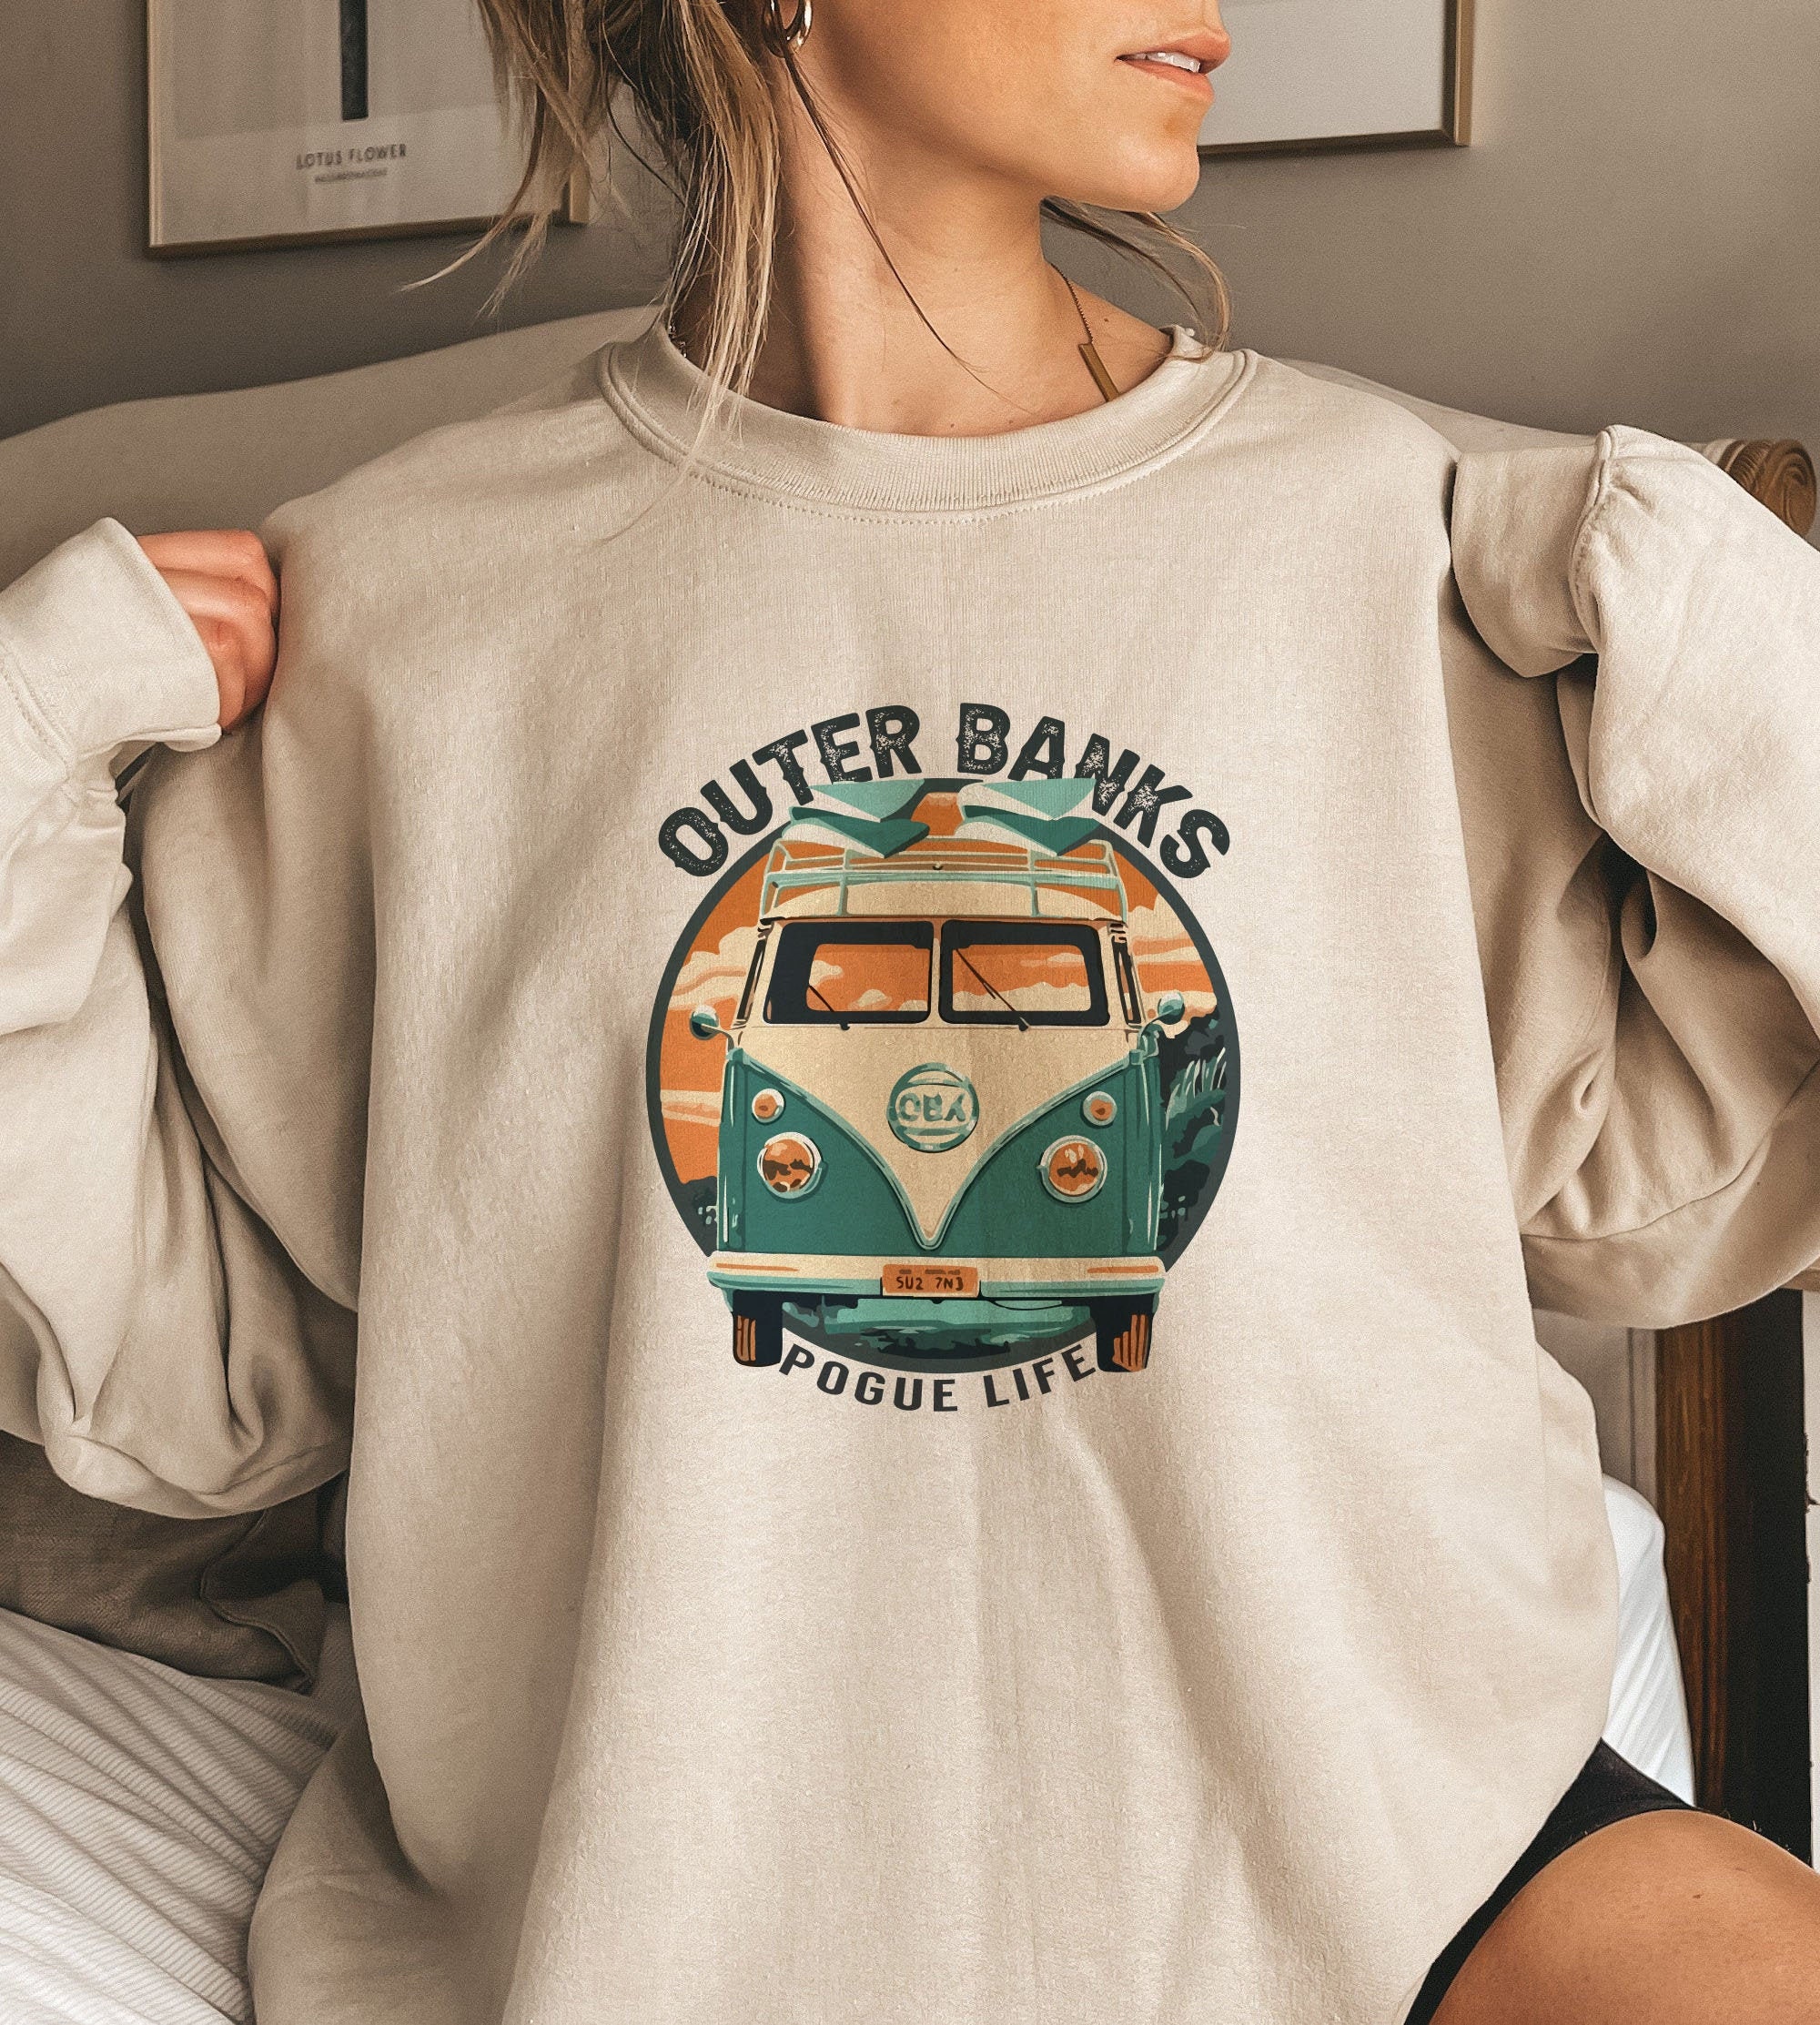 Outer Banks Sweatshirt Outer banks Shirt Outer banks Womens Sweatshirt Netflix Outer Banks Merch Pogue Life